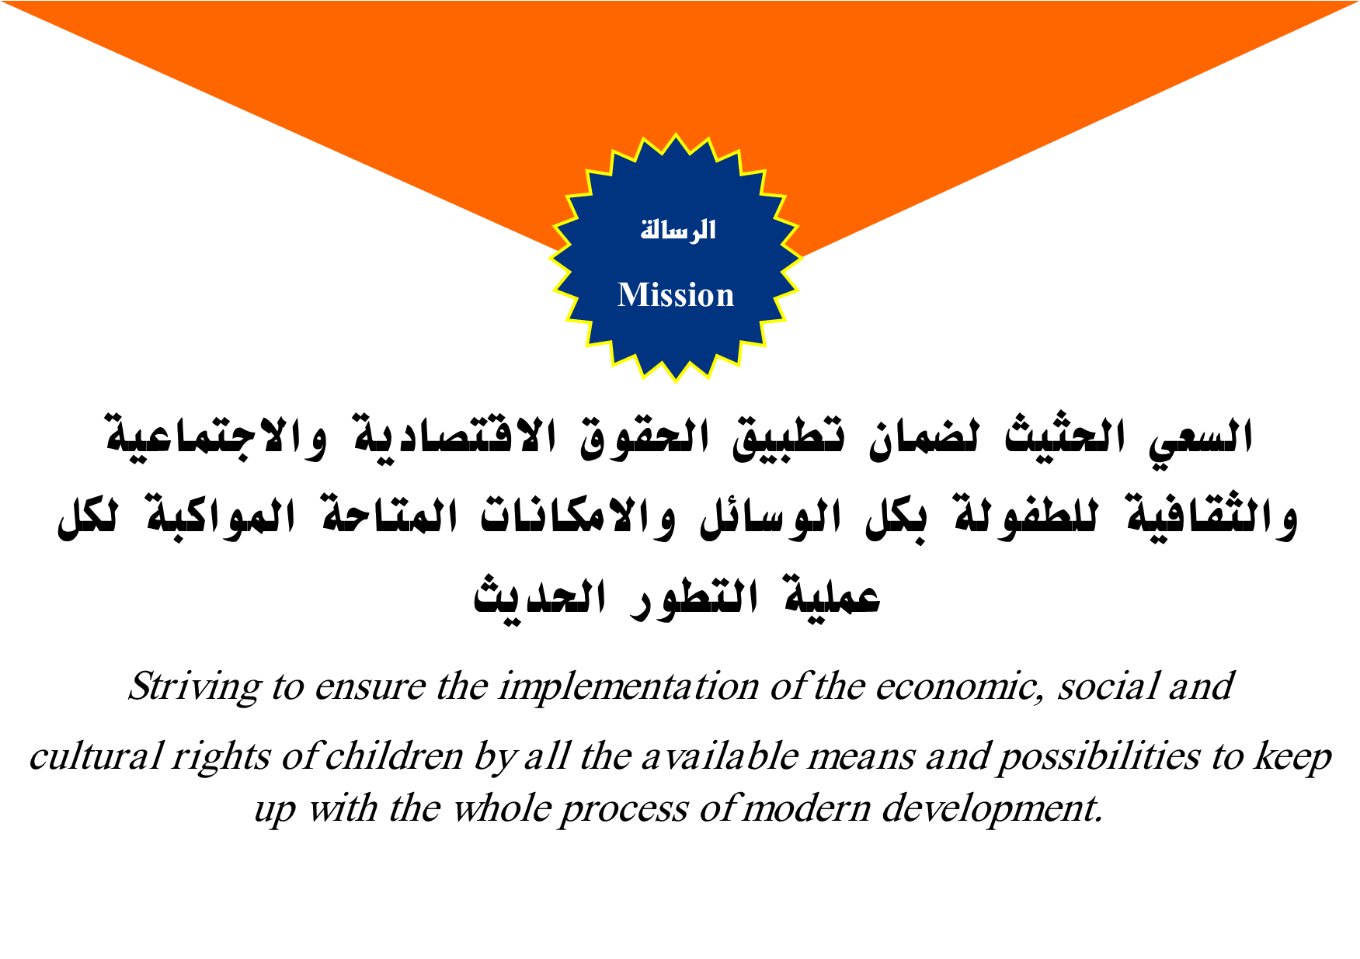 Raising Org. for Children Rights Development